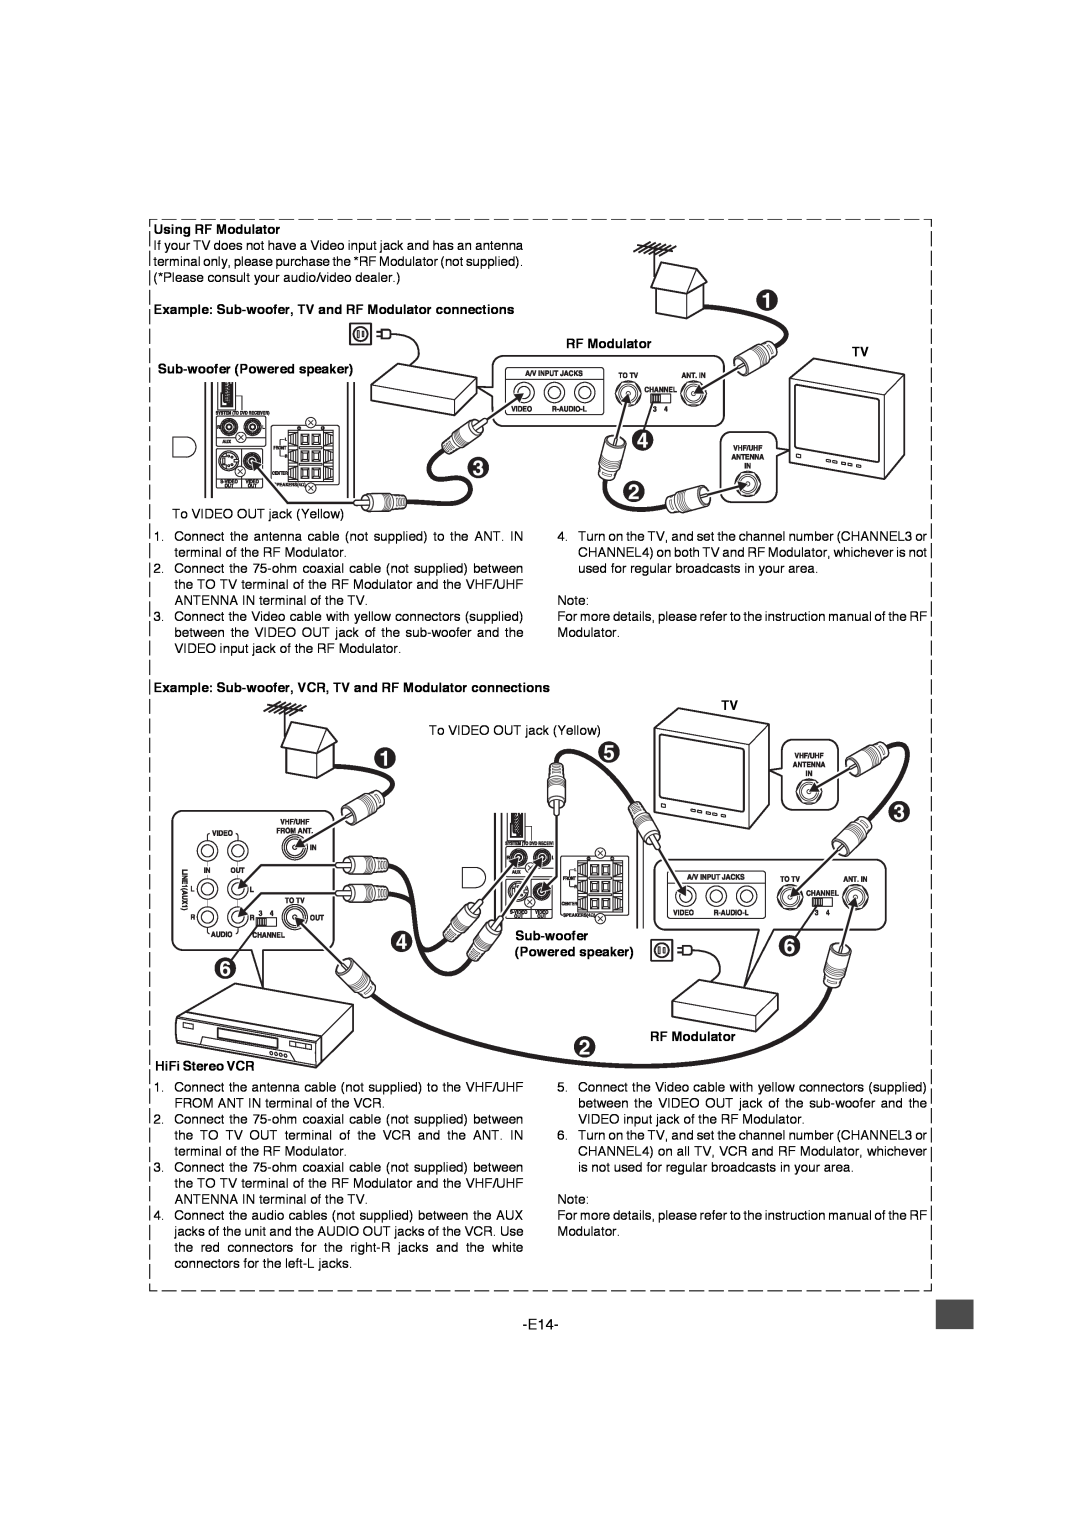 Sanyo DWM-4500 Using RF Modulator, RF Modulator TV, Sub-wooferPowered speaker RF Modulator, HiFi Stereo VCR 